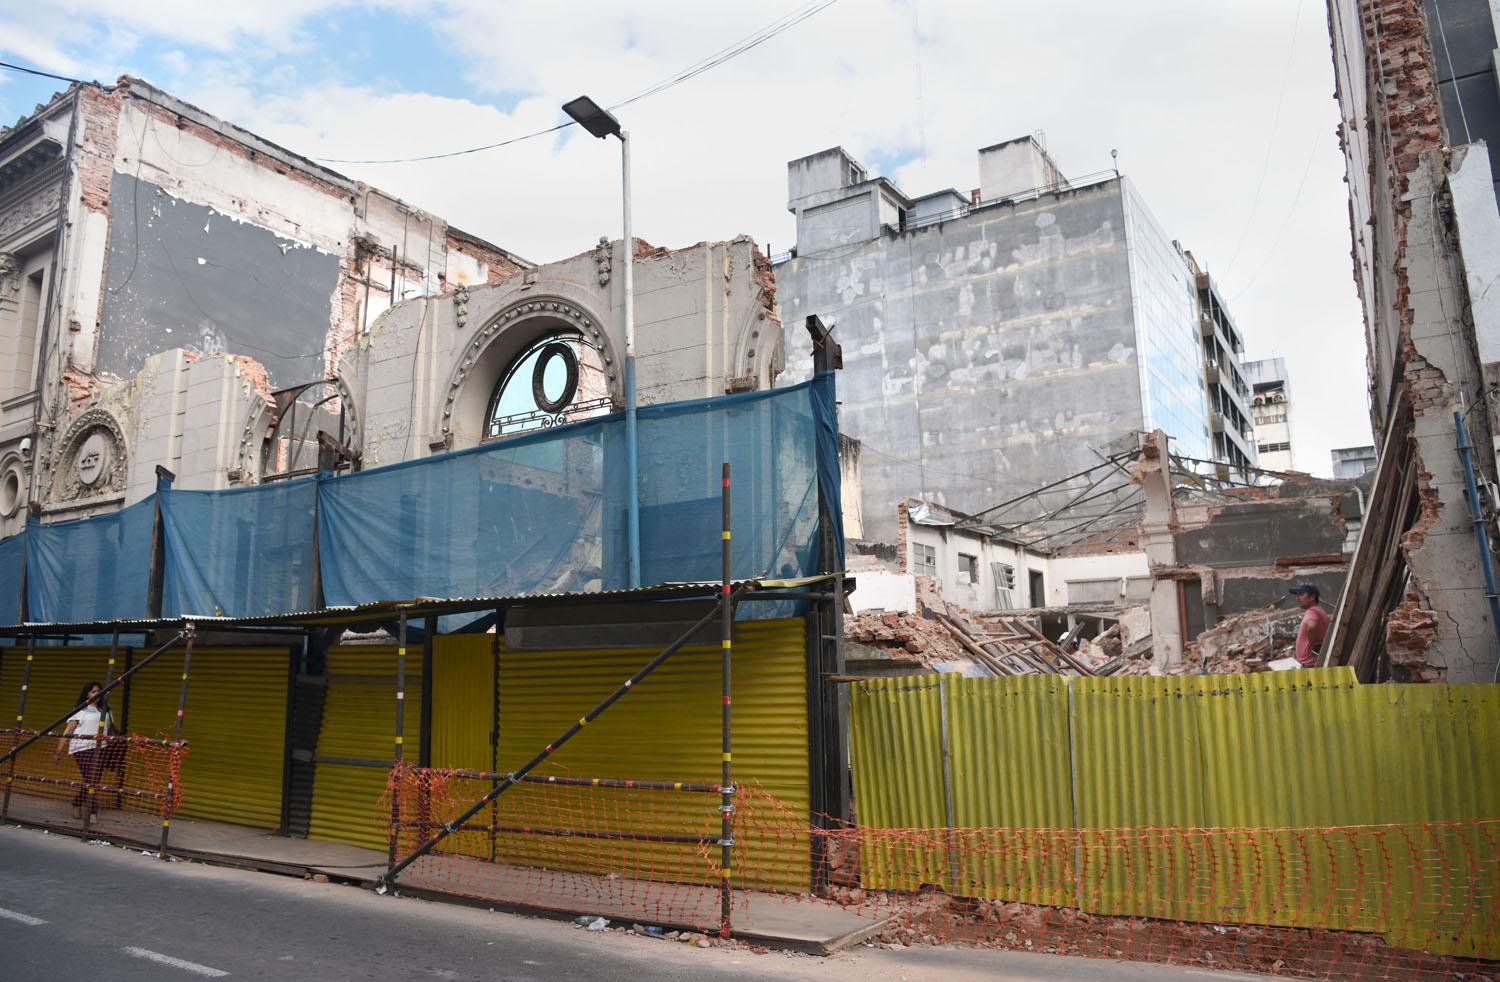 Reducida a escombros: queda en pie una parte de la fachada del ex Banco Francés